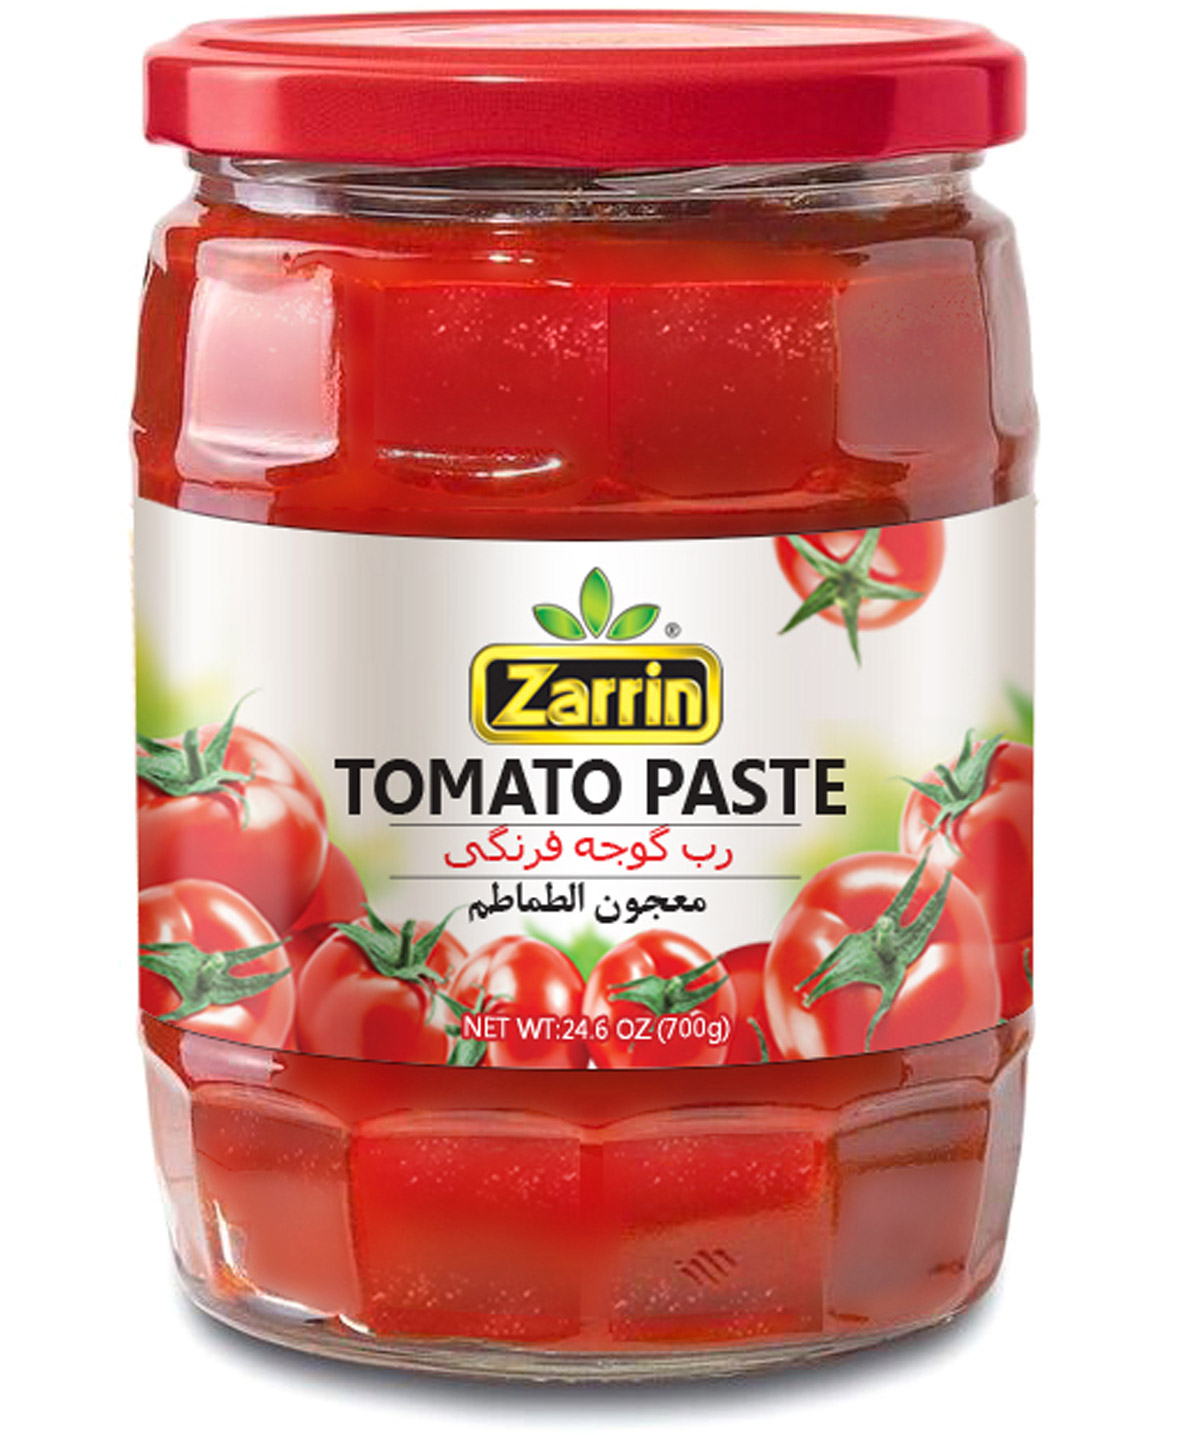 Tomato Paste In Glass Jar